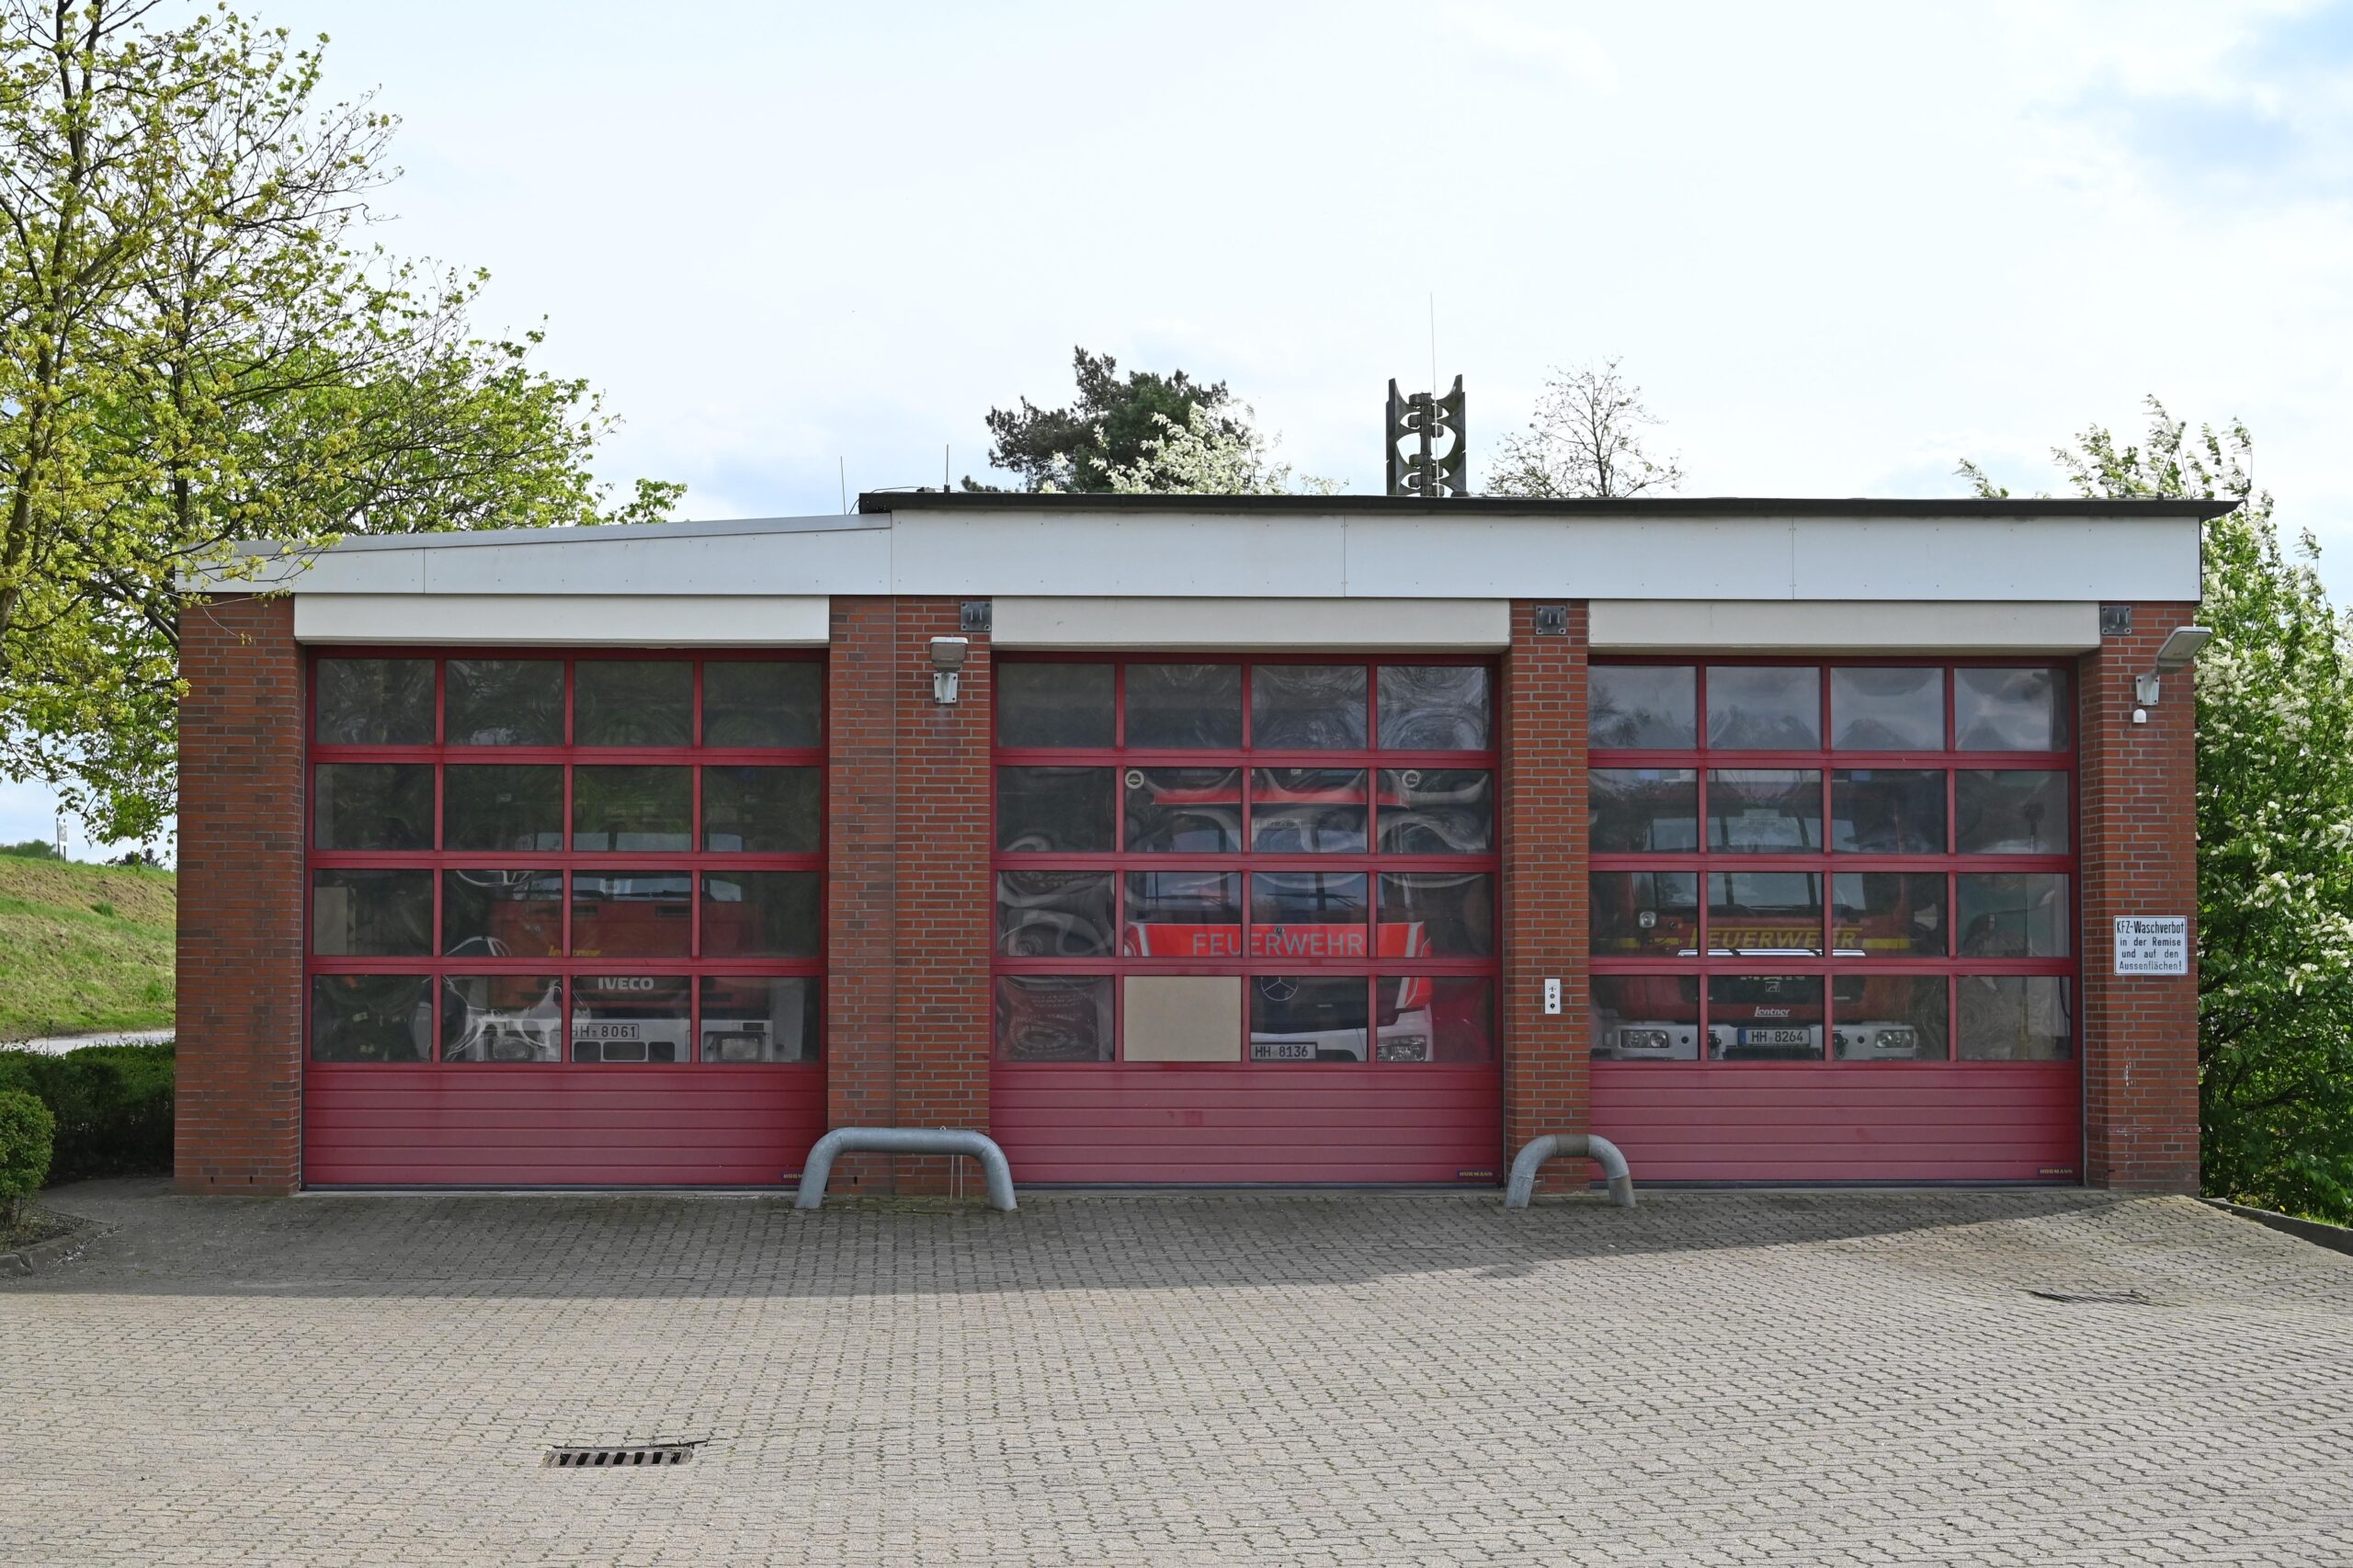 Eine Plexiglasscheibe im Garagentor wurde aufgehebelt. Dadurch erlangten der oder die Täter Zugangs ins Feuerwehr in Francop.